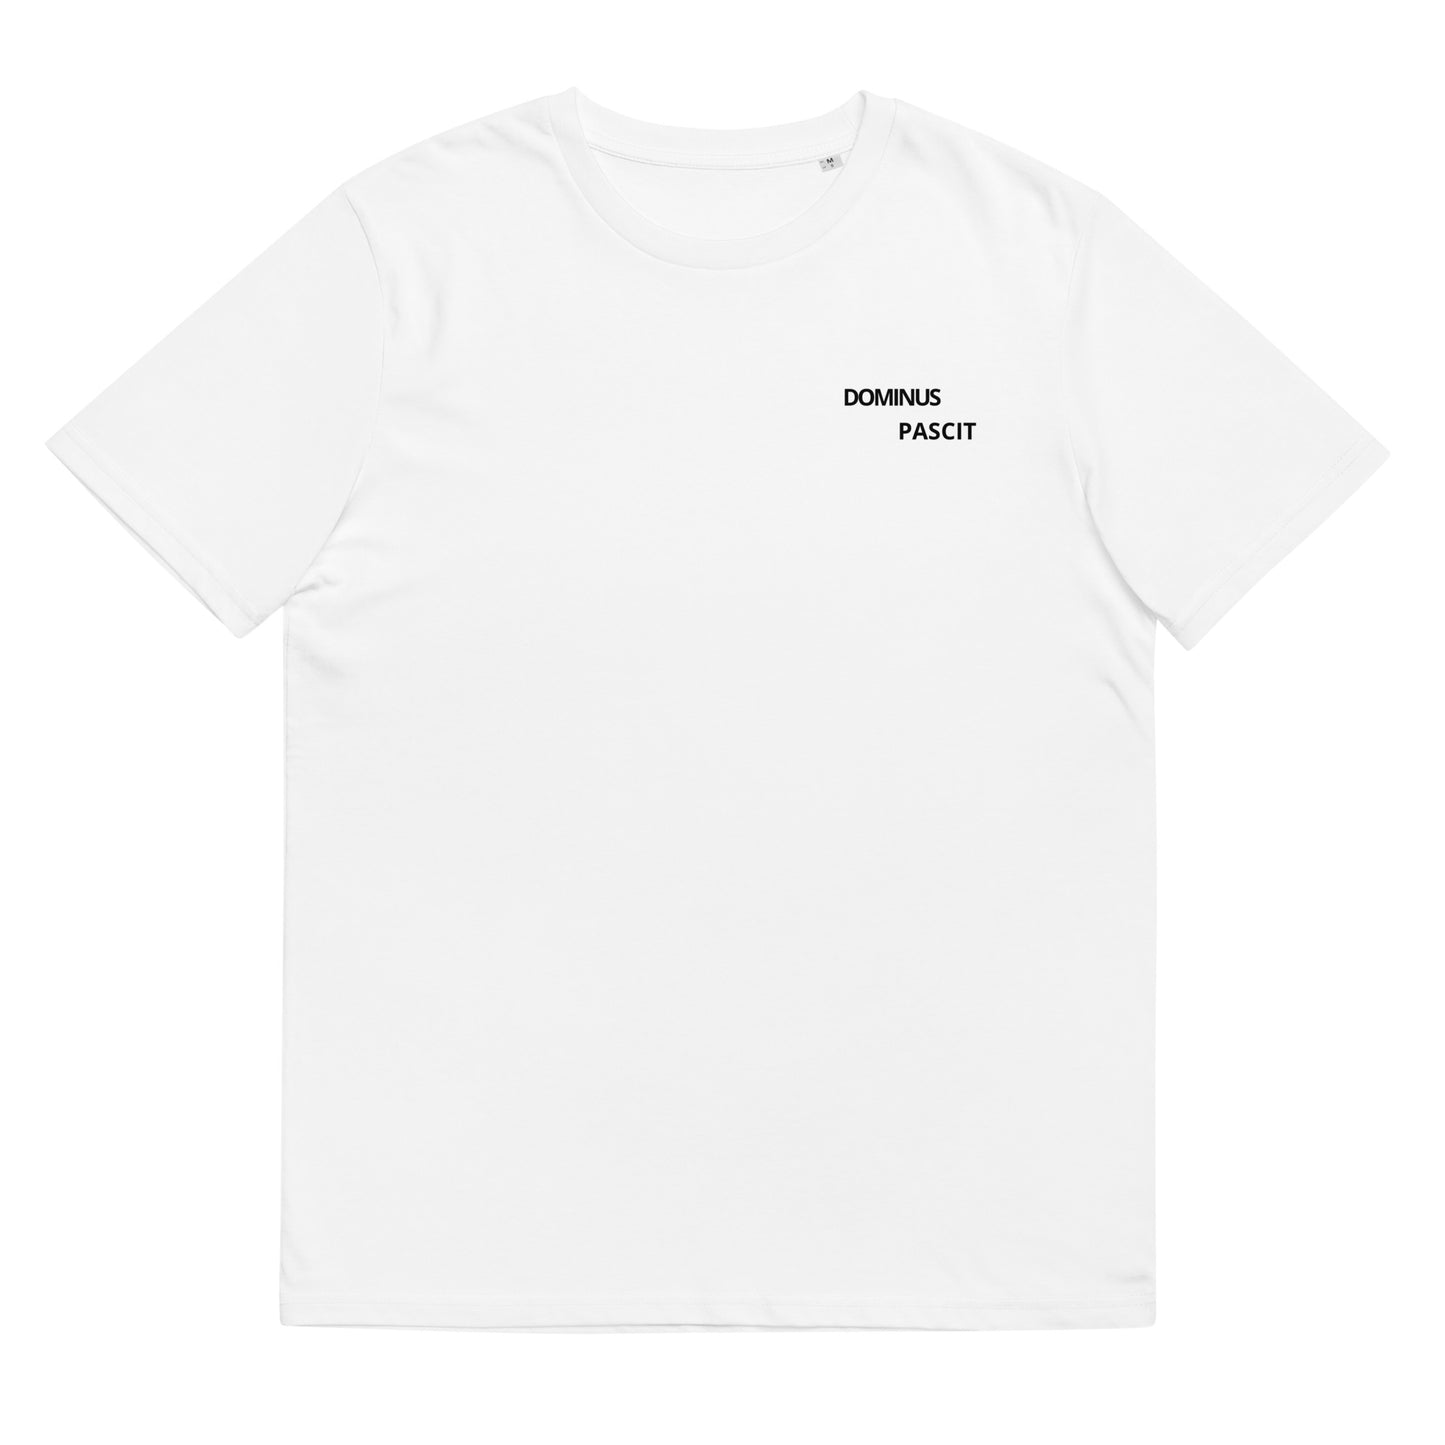 T-shirt blanc 100% coton unisexe DOMINUS PASCIT